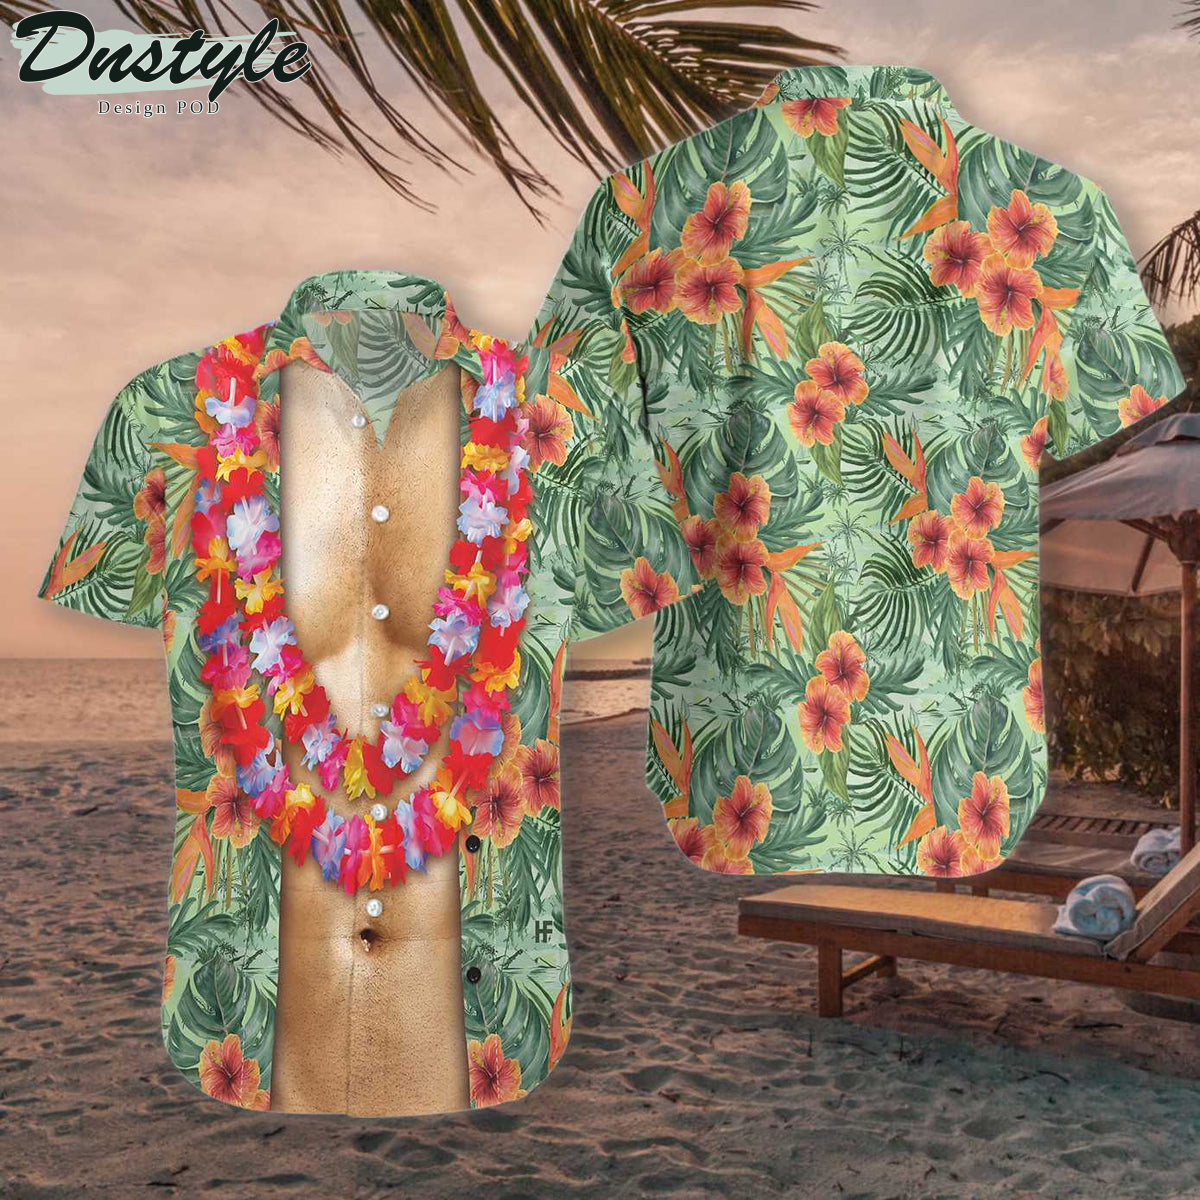 Funny Tropical Hawaiian Shirt